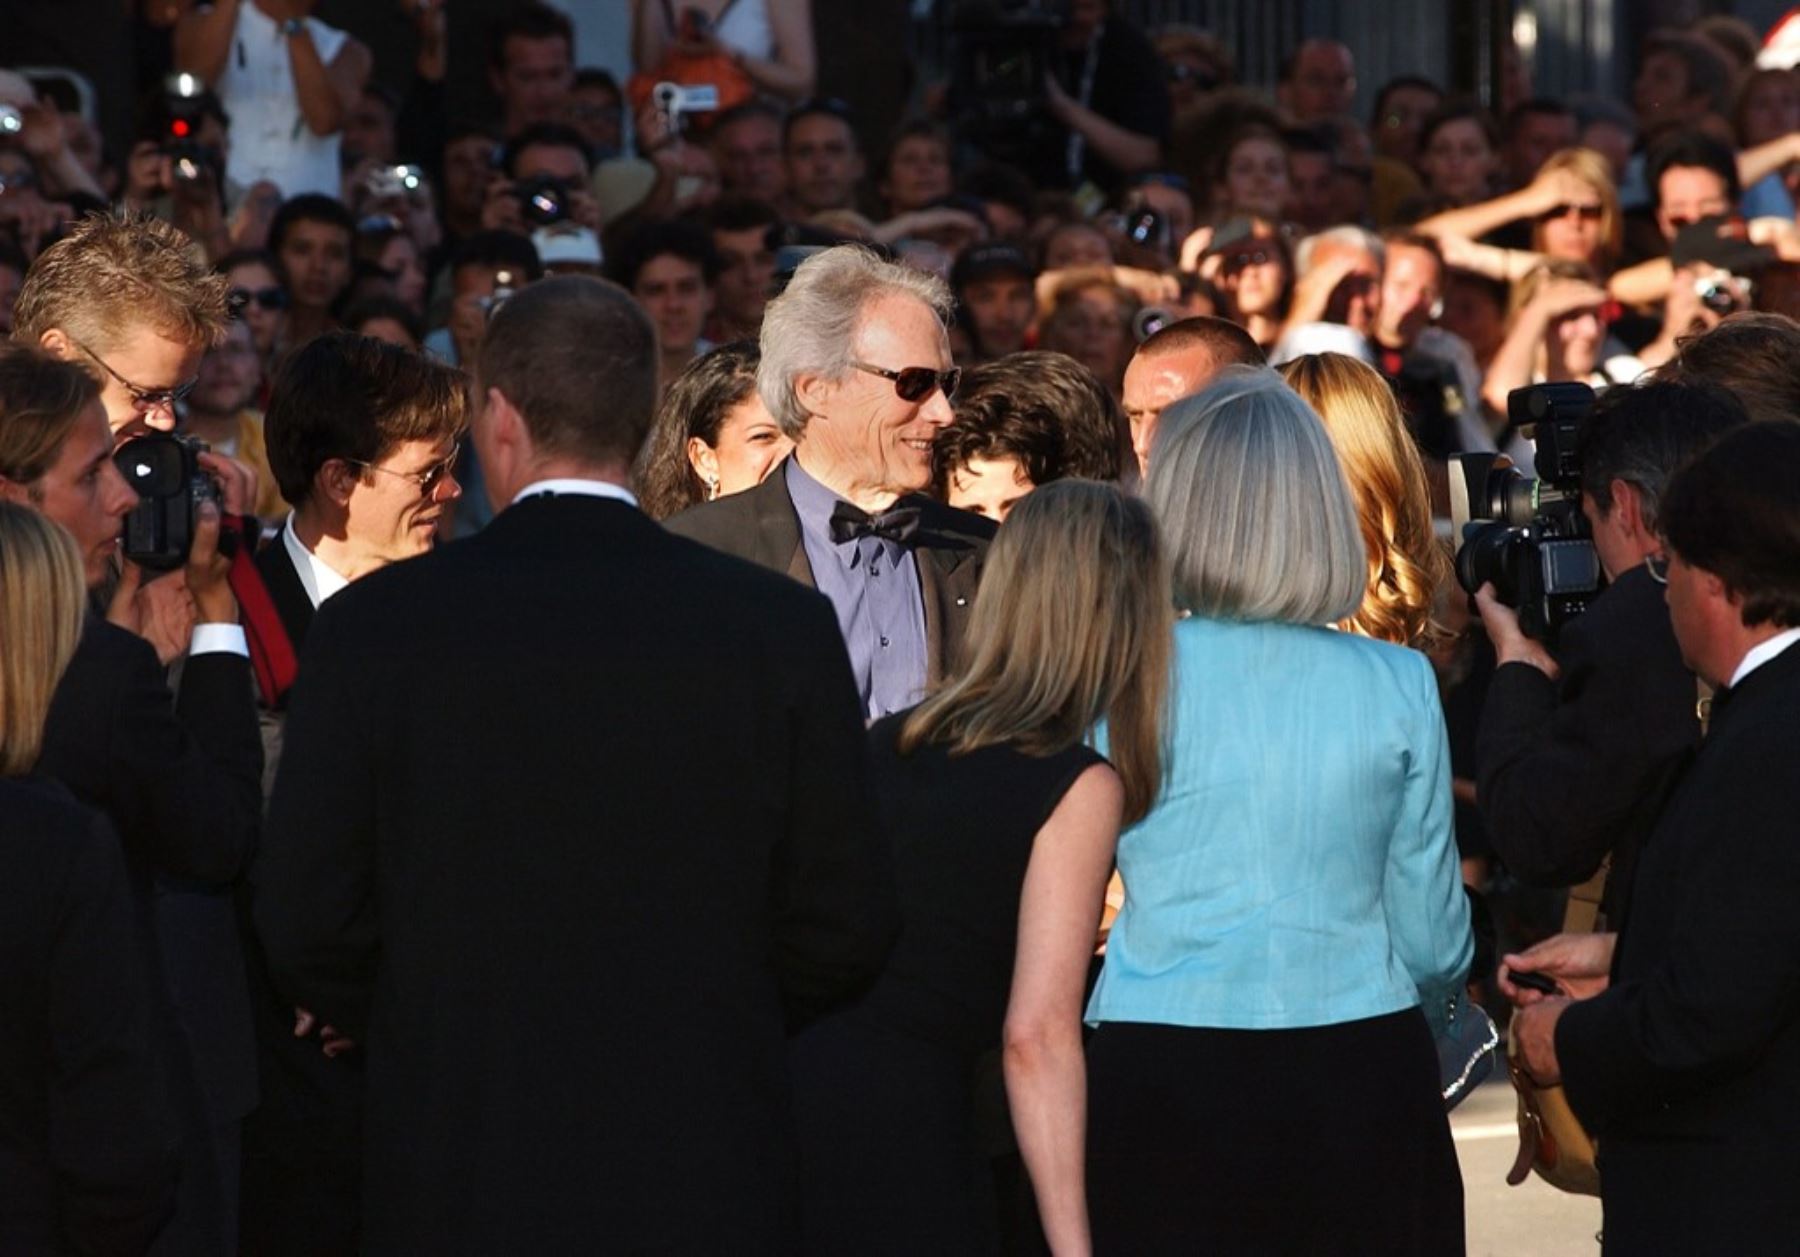 El actor y director estadounidense Clint Eastwood llega al palacio de festivales para asistir a la proyección de su película "Mystic River" durante el 56 ° Festival de Cine de Cannes, el 23 de mayo de 2003. Foto: AFP